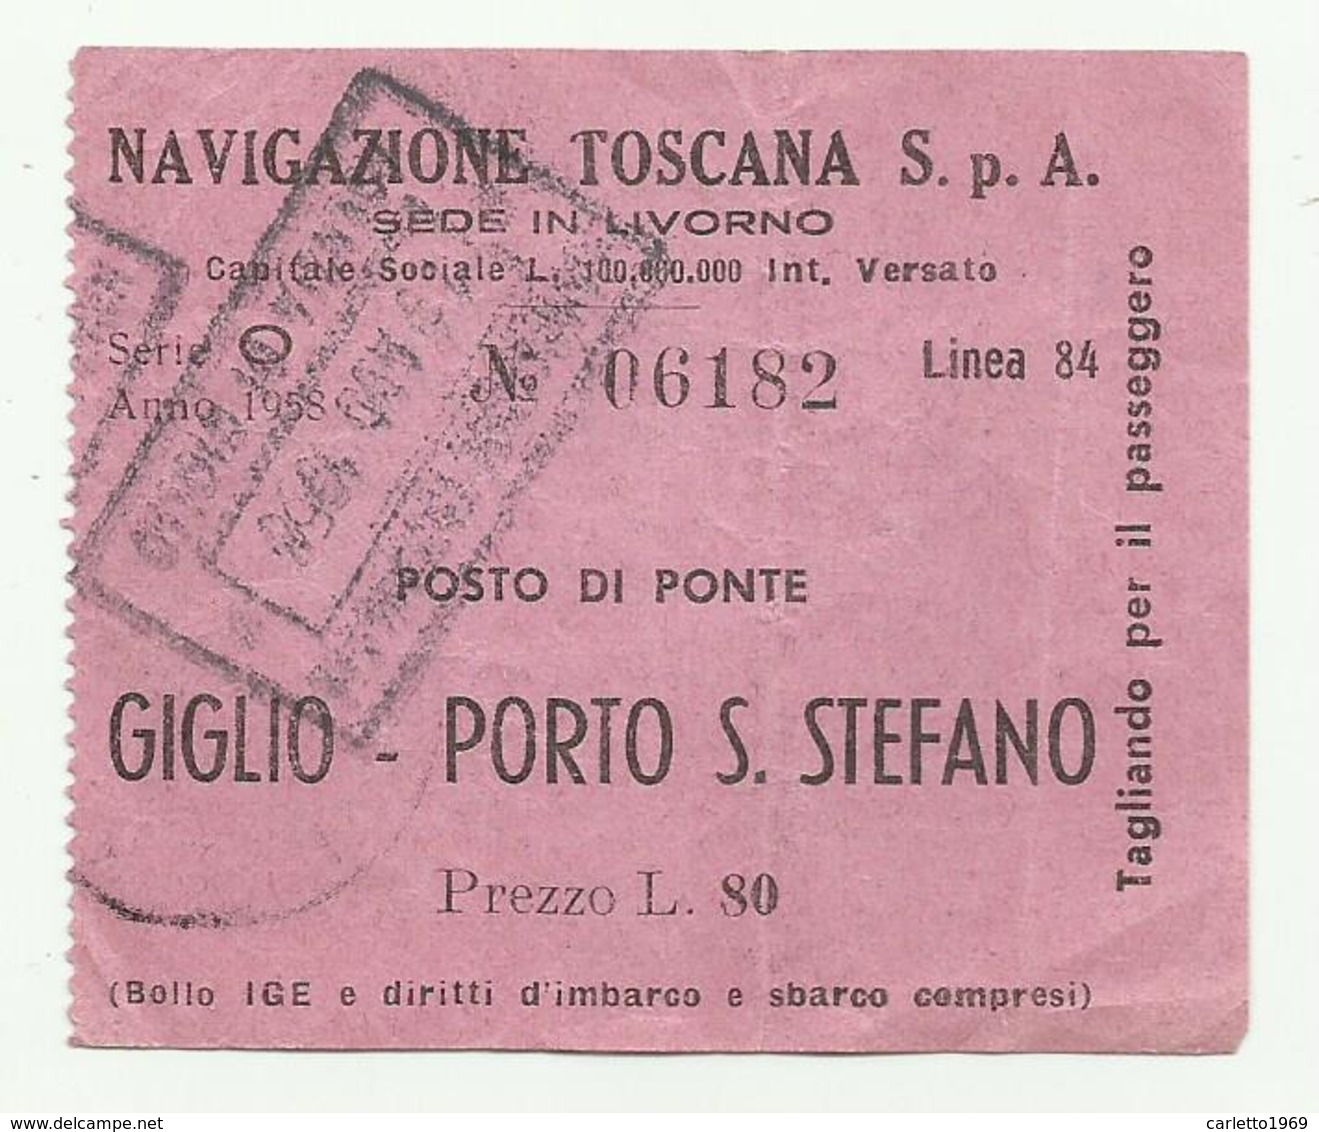 NAVIGAZIONE TOSCANA BIGLIETTO GIGLIO - PORTO S.STEFANO 1958 - Europa